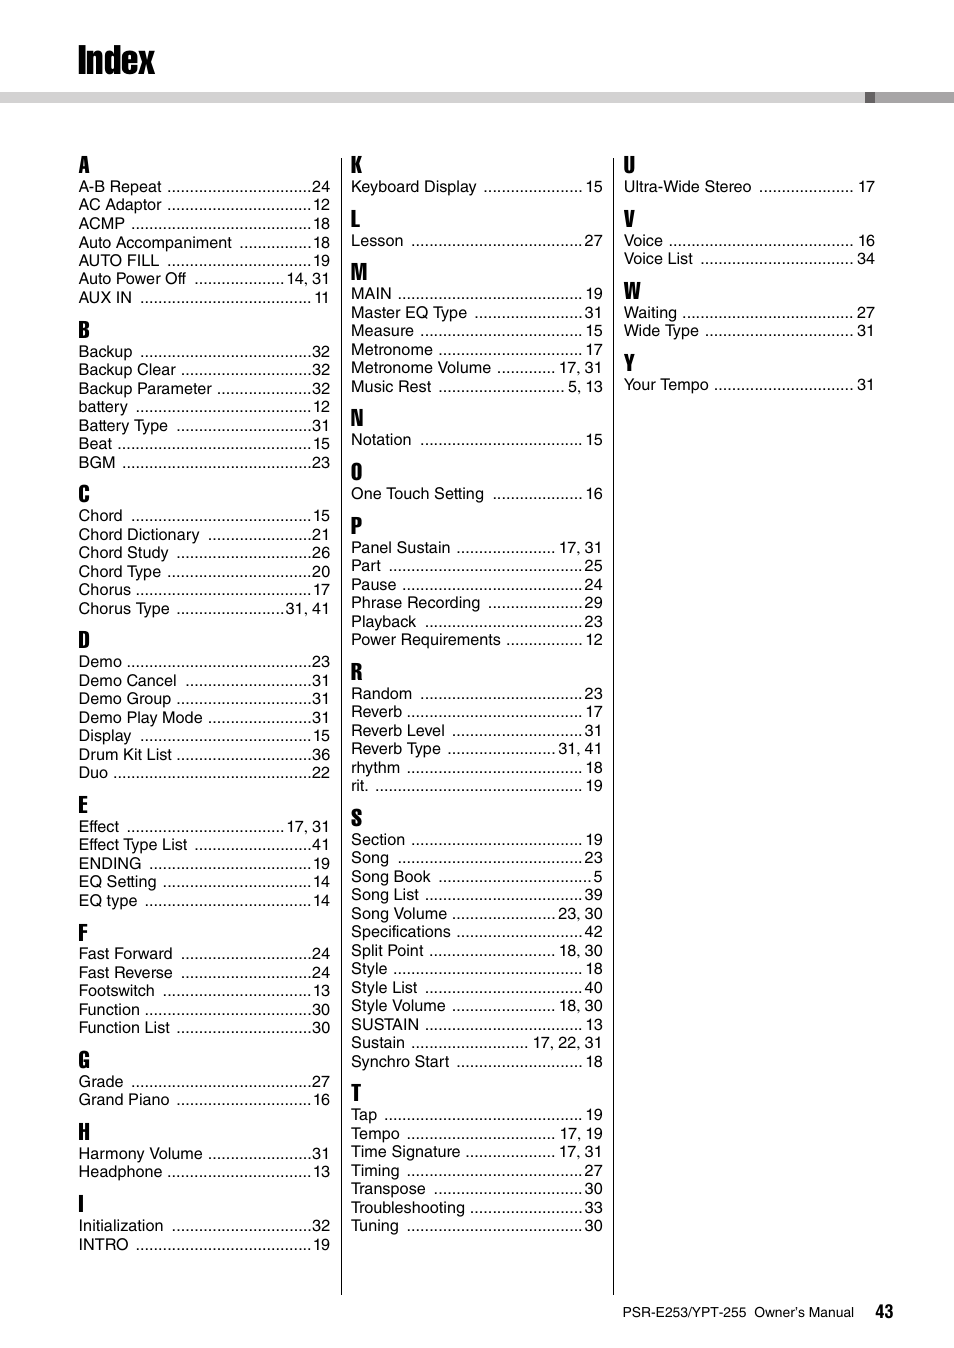 Index | Yamaha PSR-E253 User Manual | Page 43 / 48